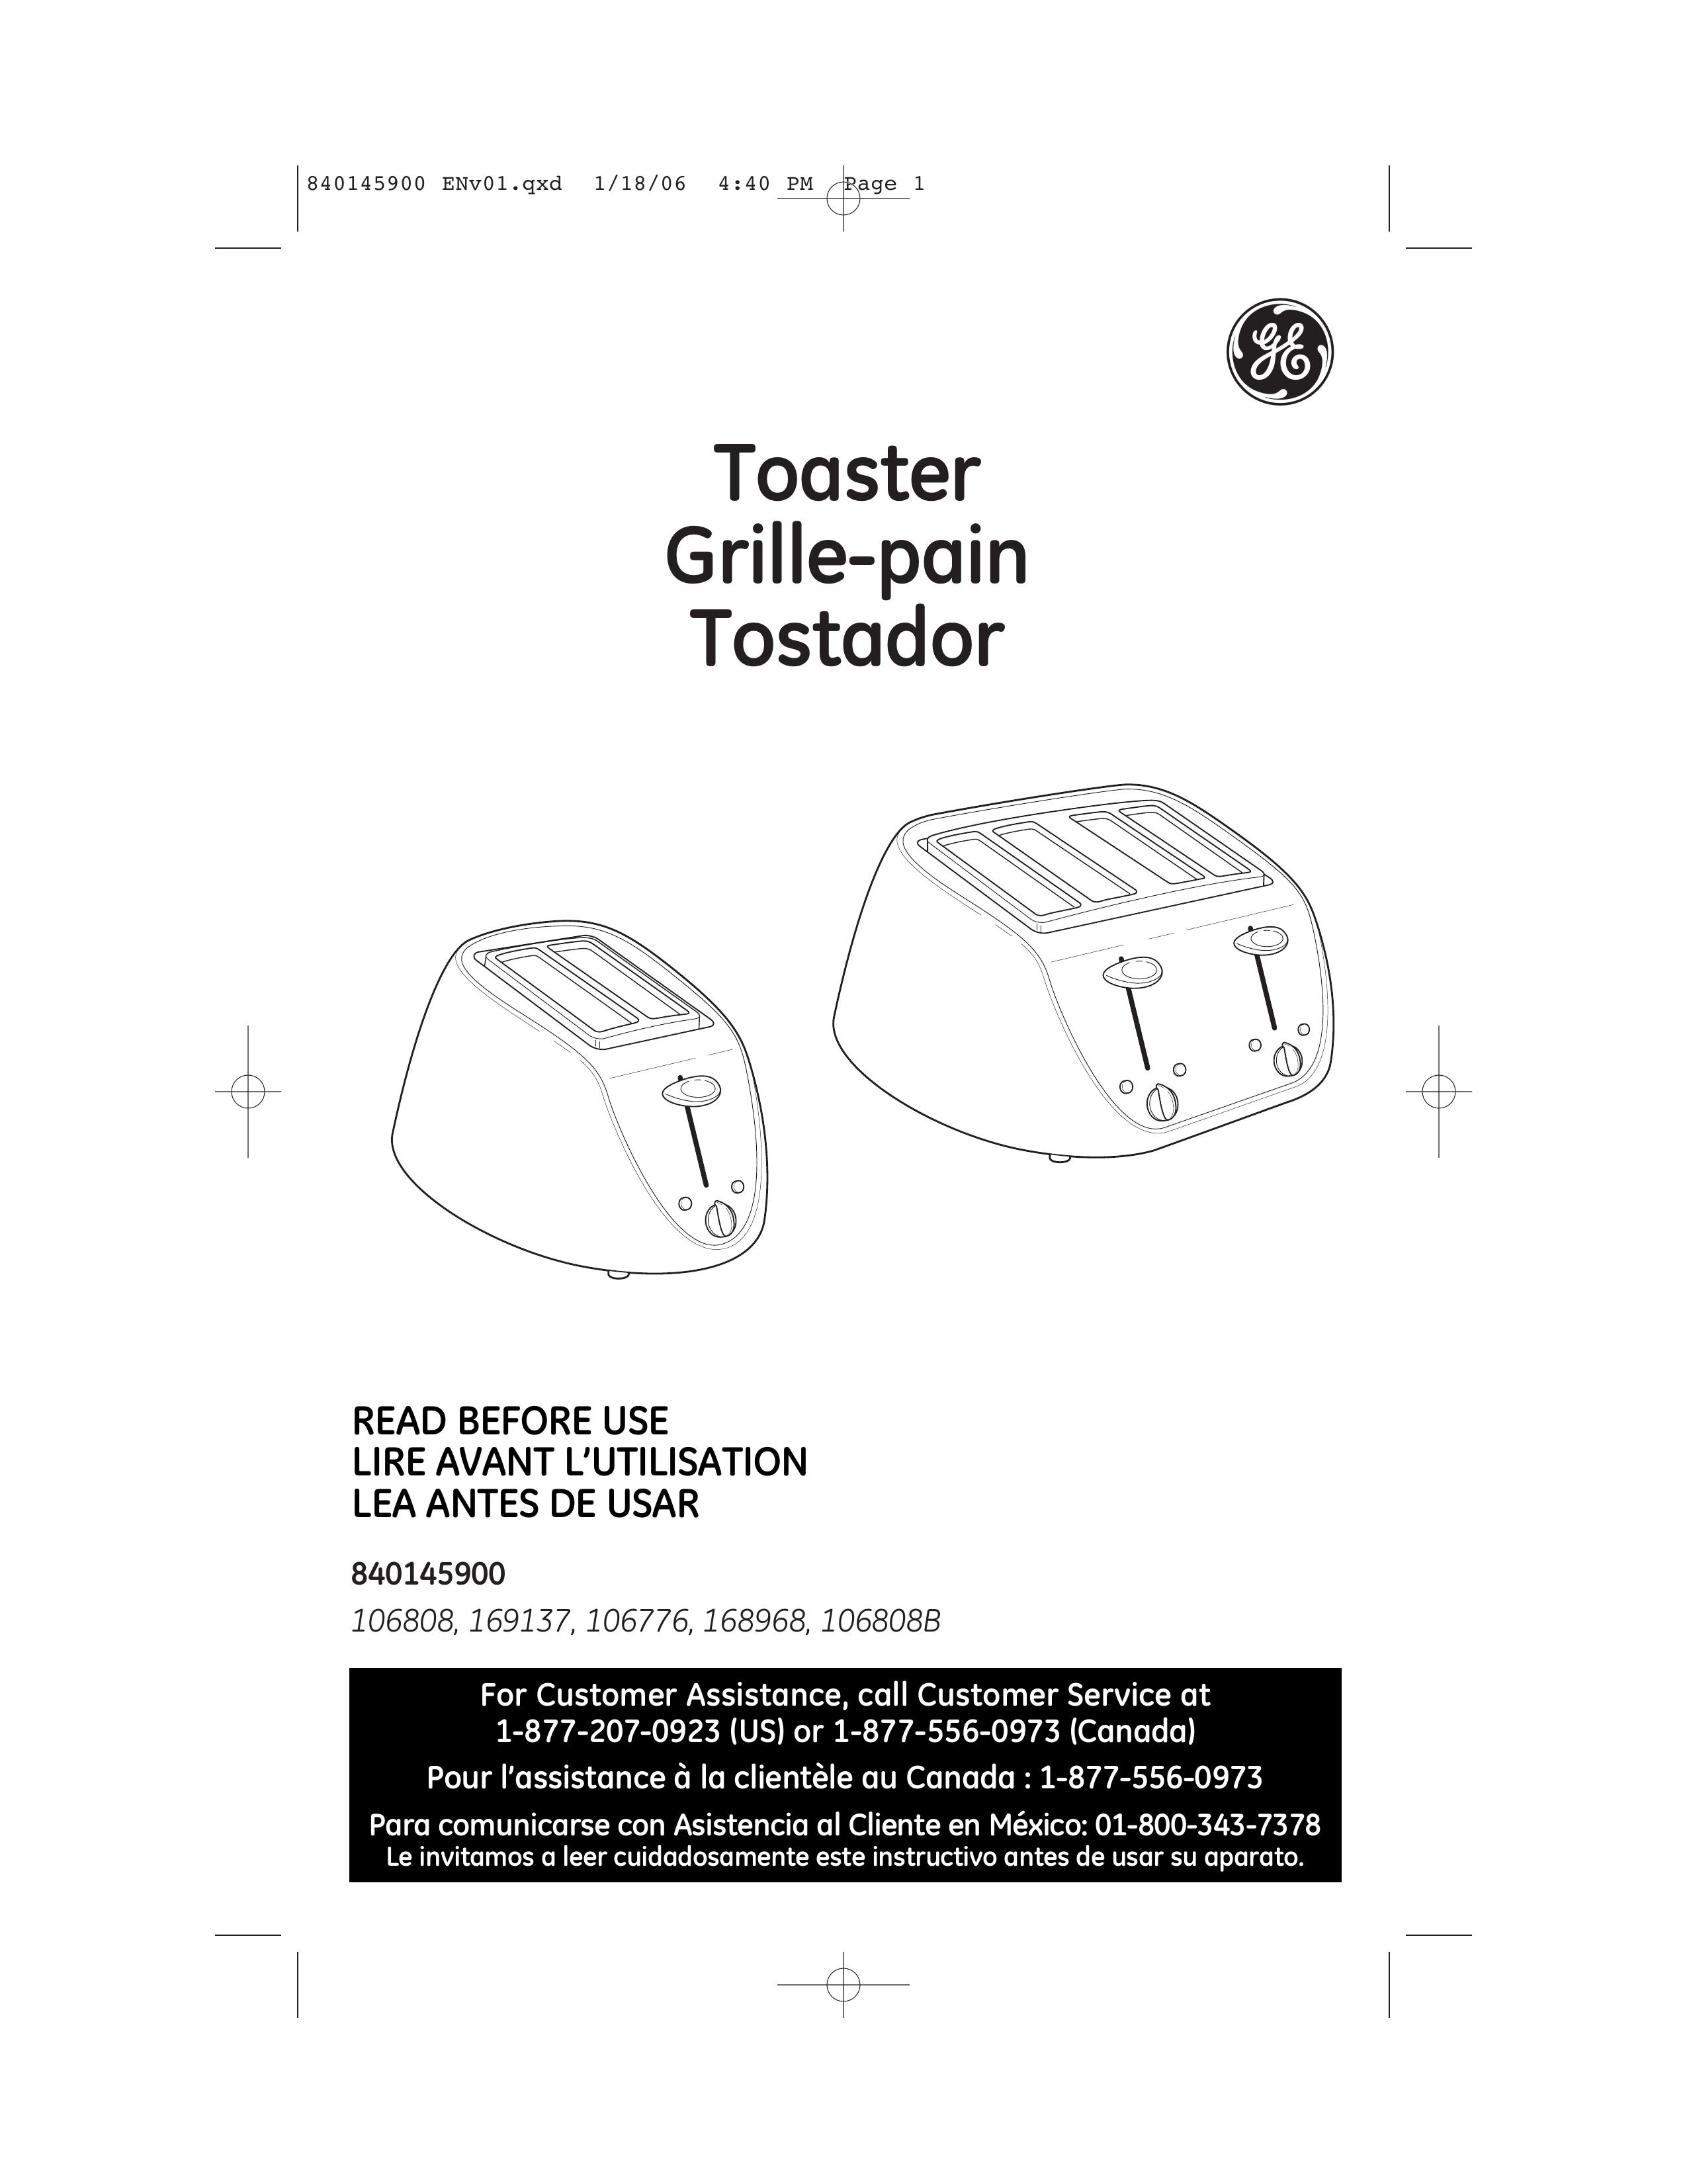 GE 840145900 Toaster User Manual